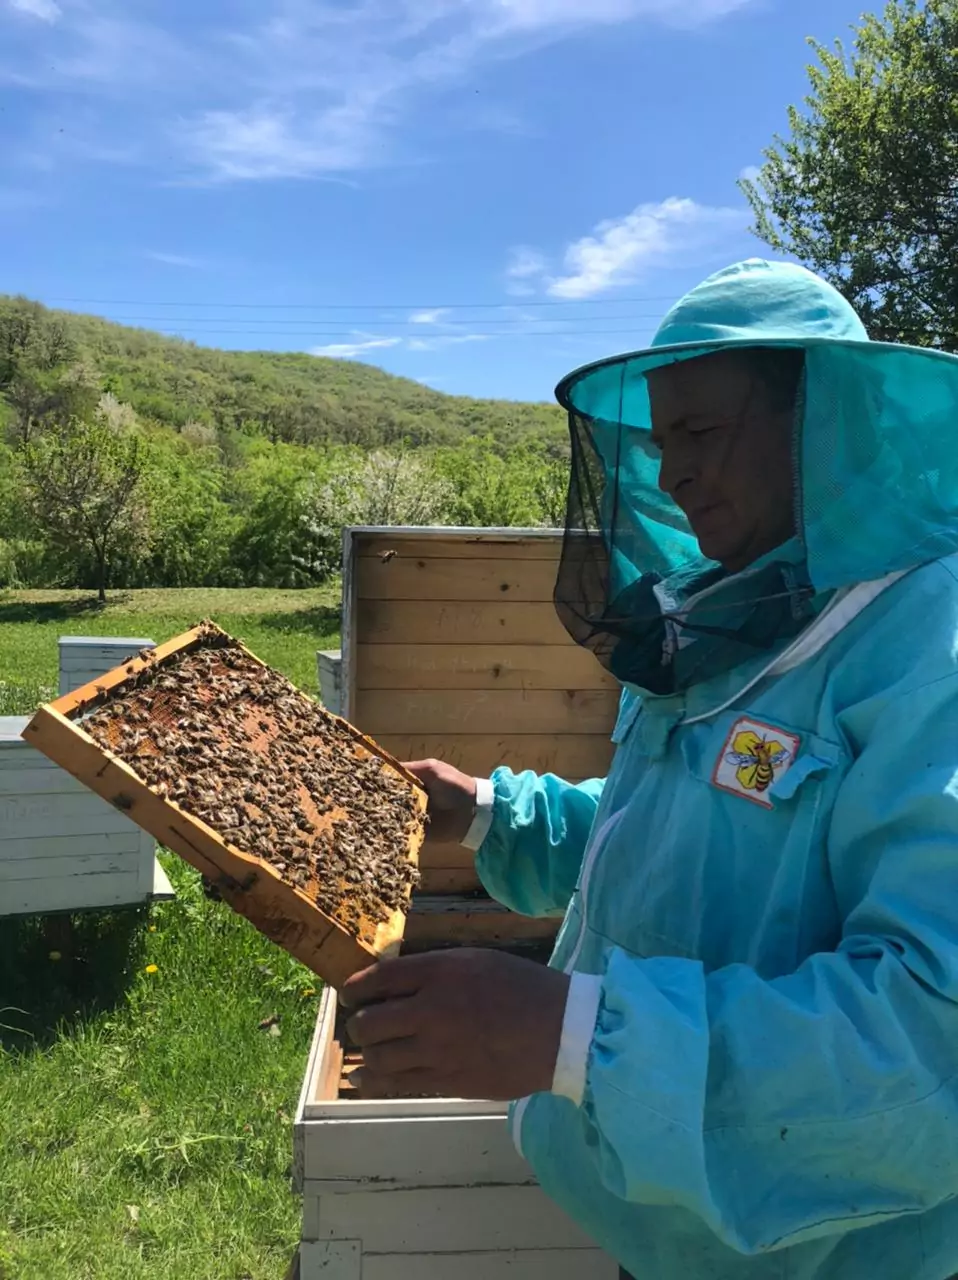 Пчеловод Михаил Мищенко рассказал, как устроена пчелиная семья, с каким настроением нужно подходить к улью и мед каких сортов можно добыть под Армавиром